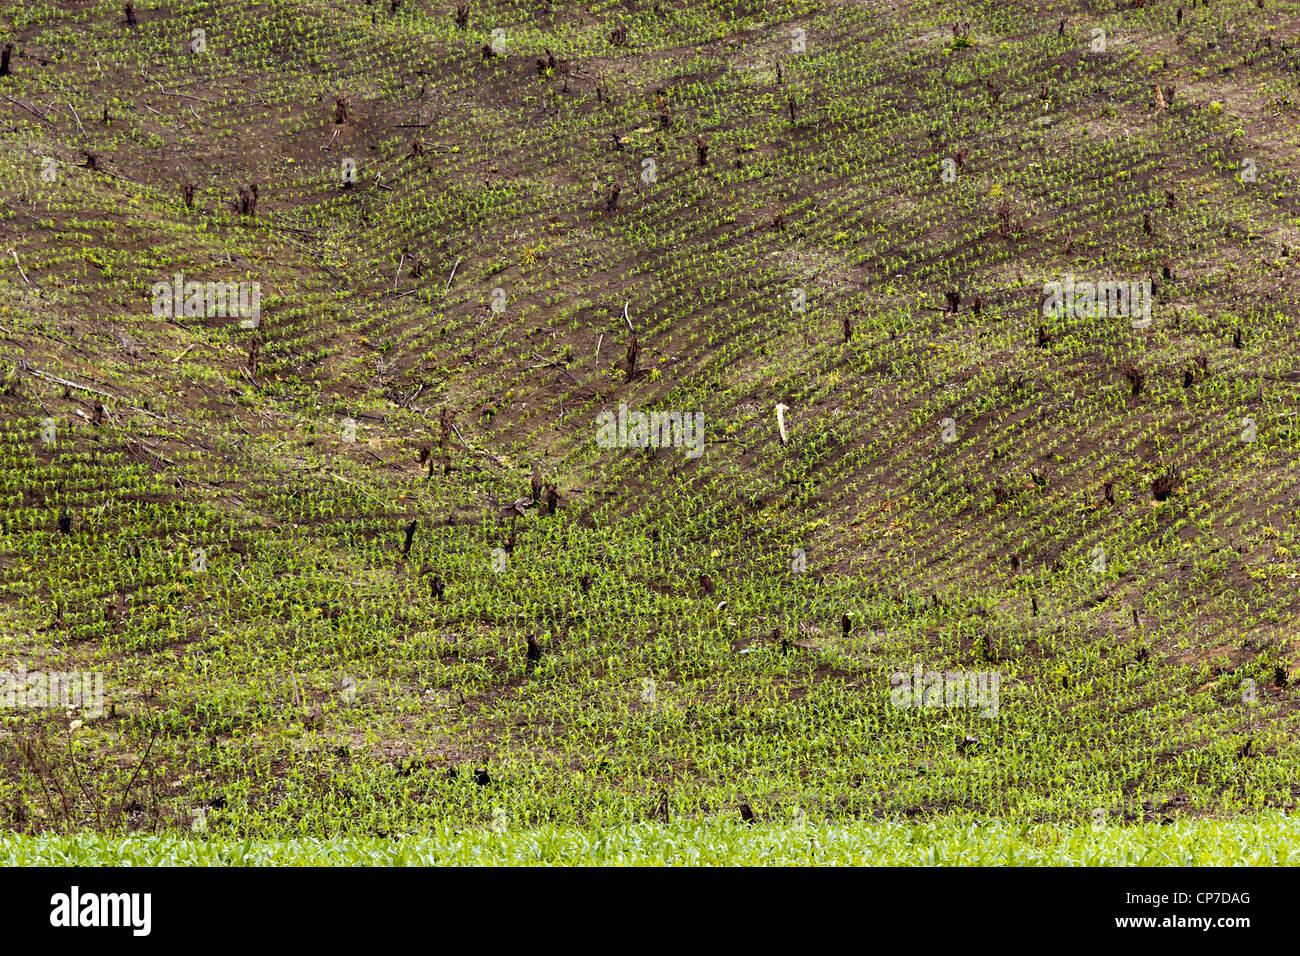 Schrägstrich und brennen Anbau in westlichen Ecuador, steilen Hang geräumt und mit Maiskeimlinge bepflanzt. Stockfoto